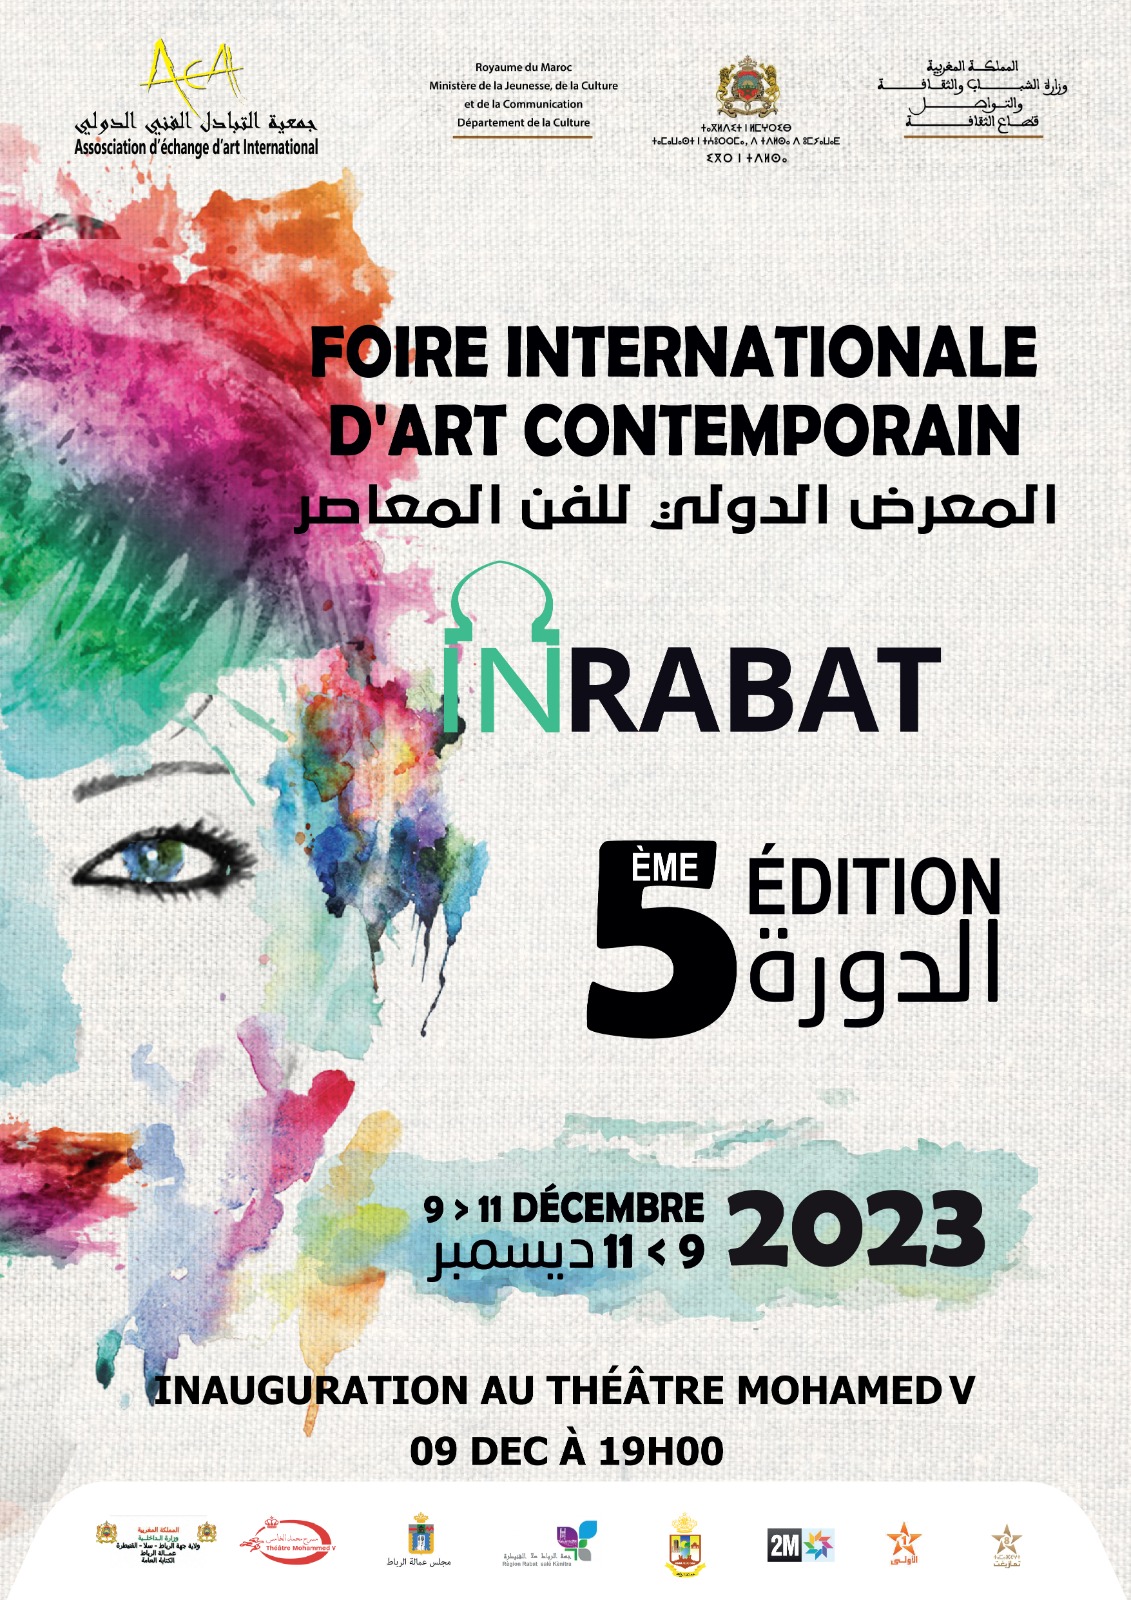 La 5ème édition de la foire internationale d'art contemporain, du 09 au 11 décembre à Rabat